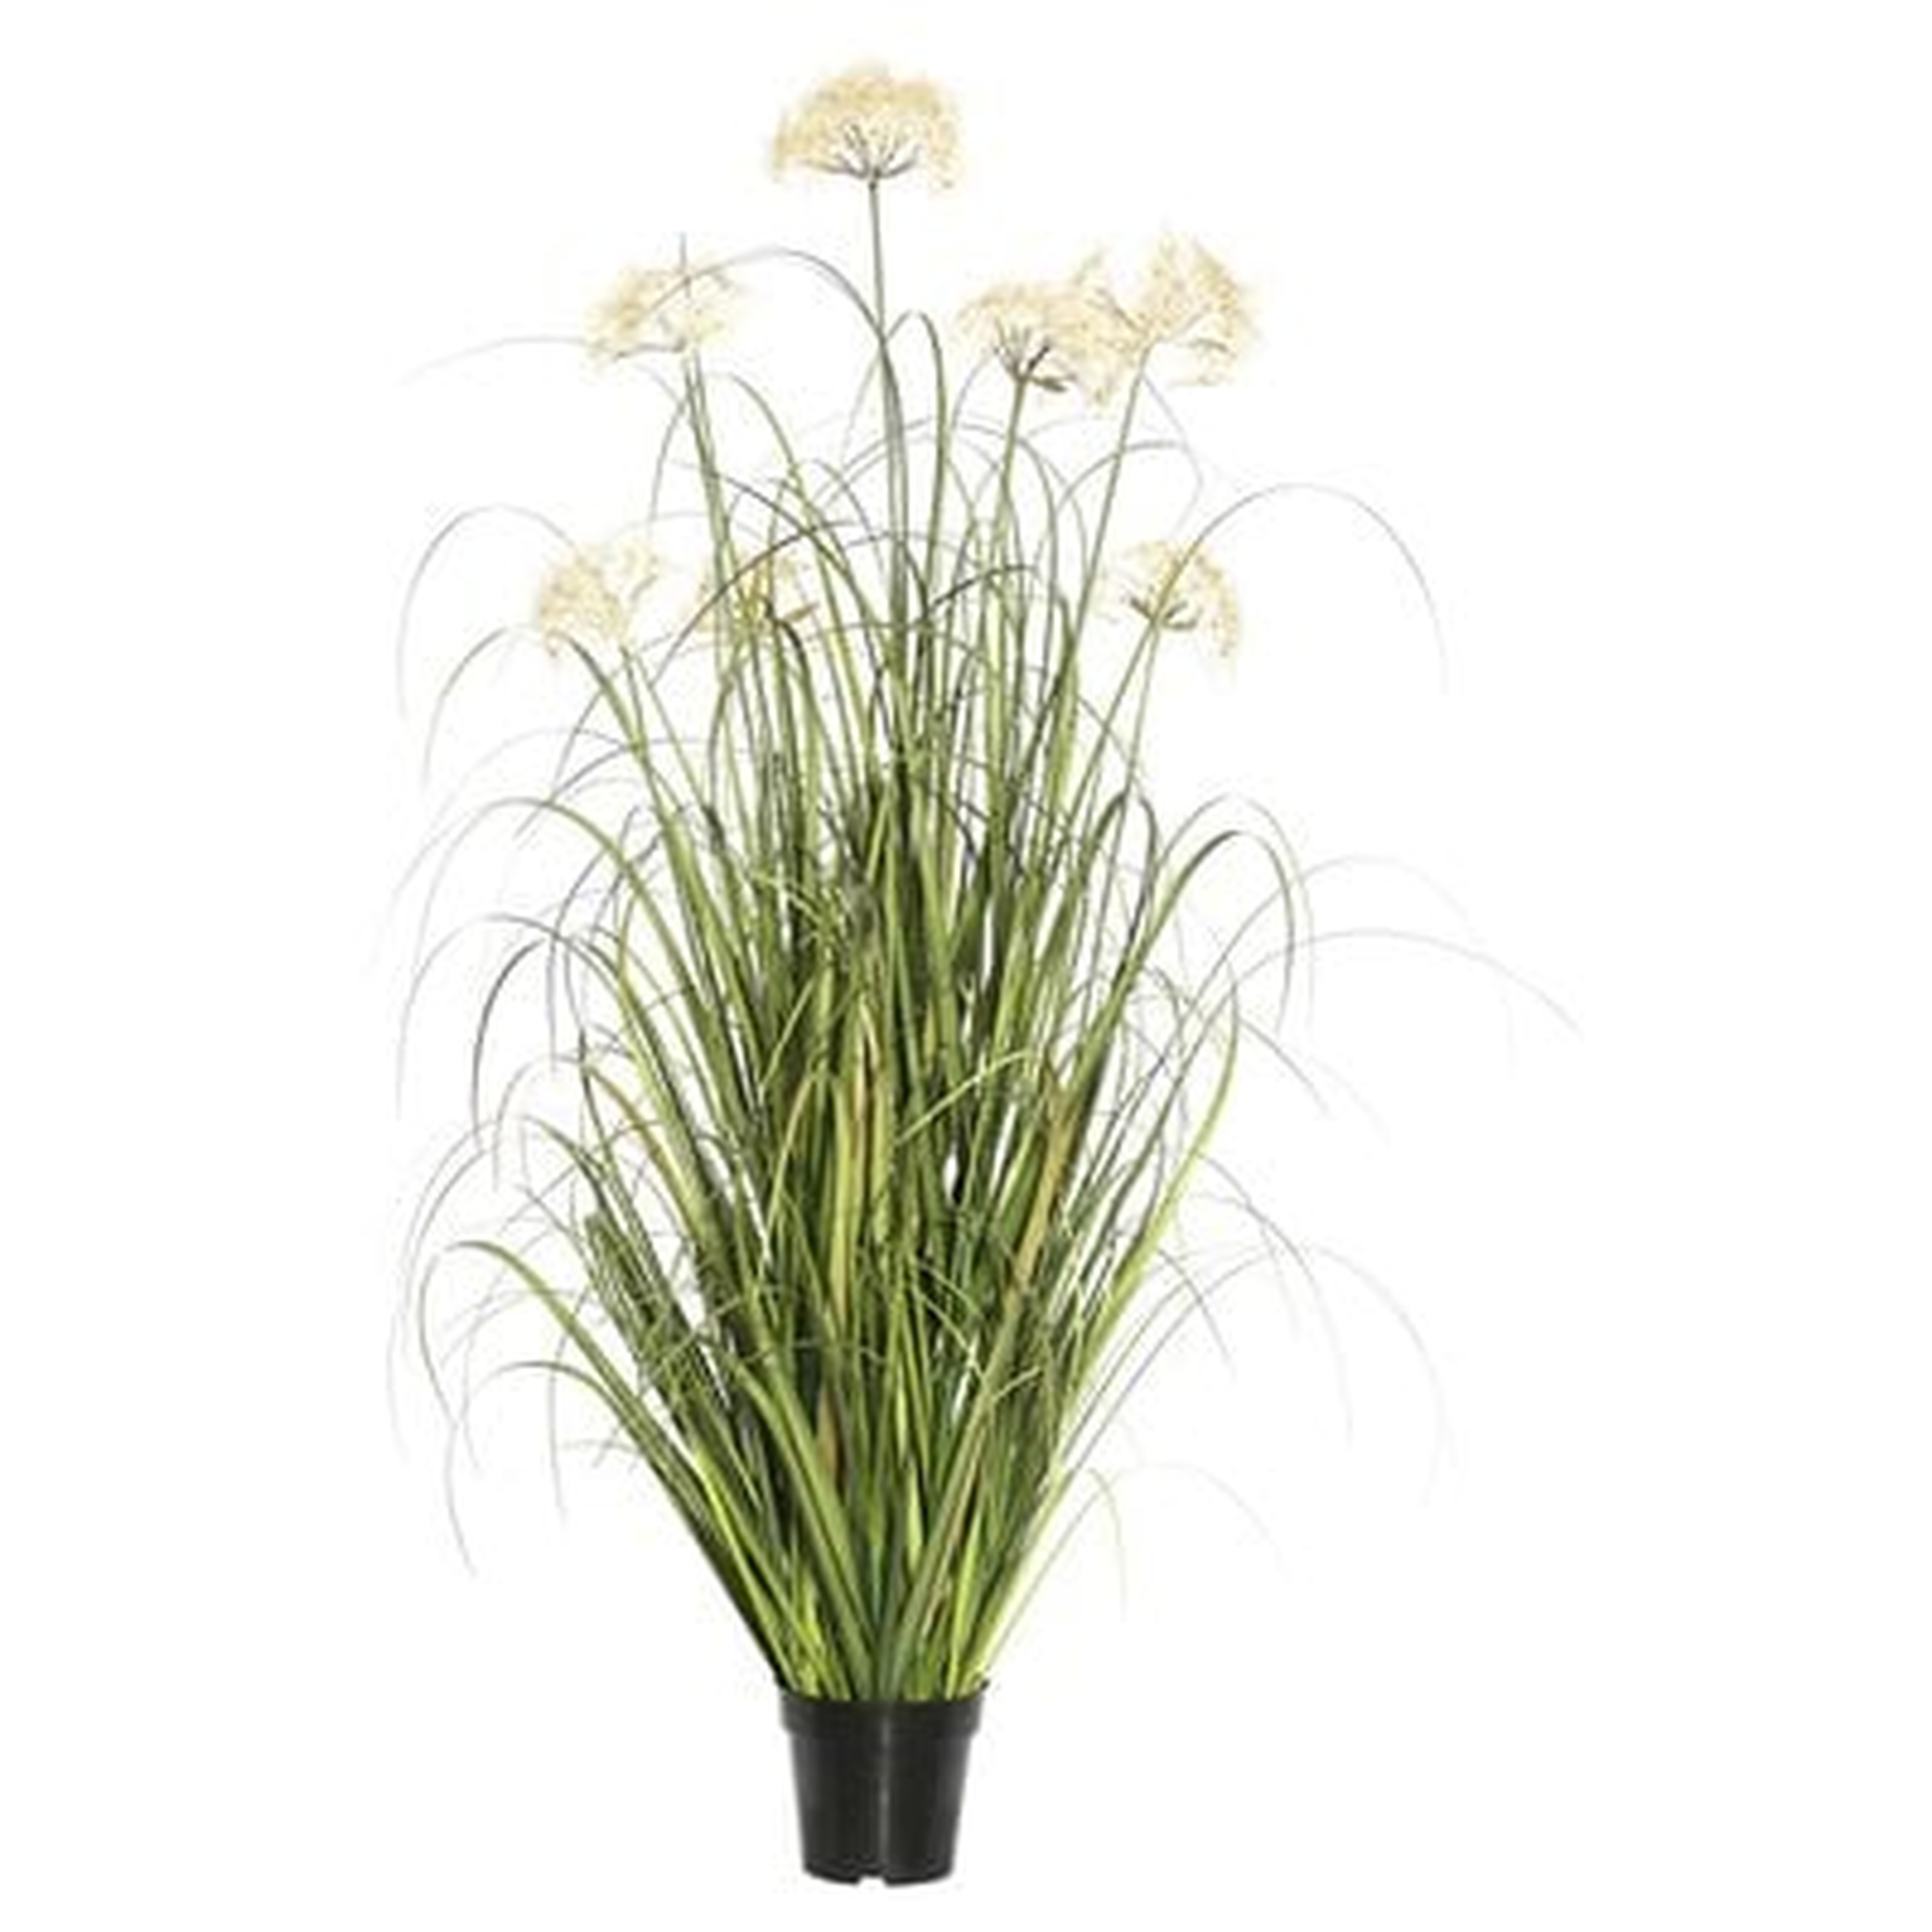 Artificial Flowering Grass in Pot - Wayfair